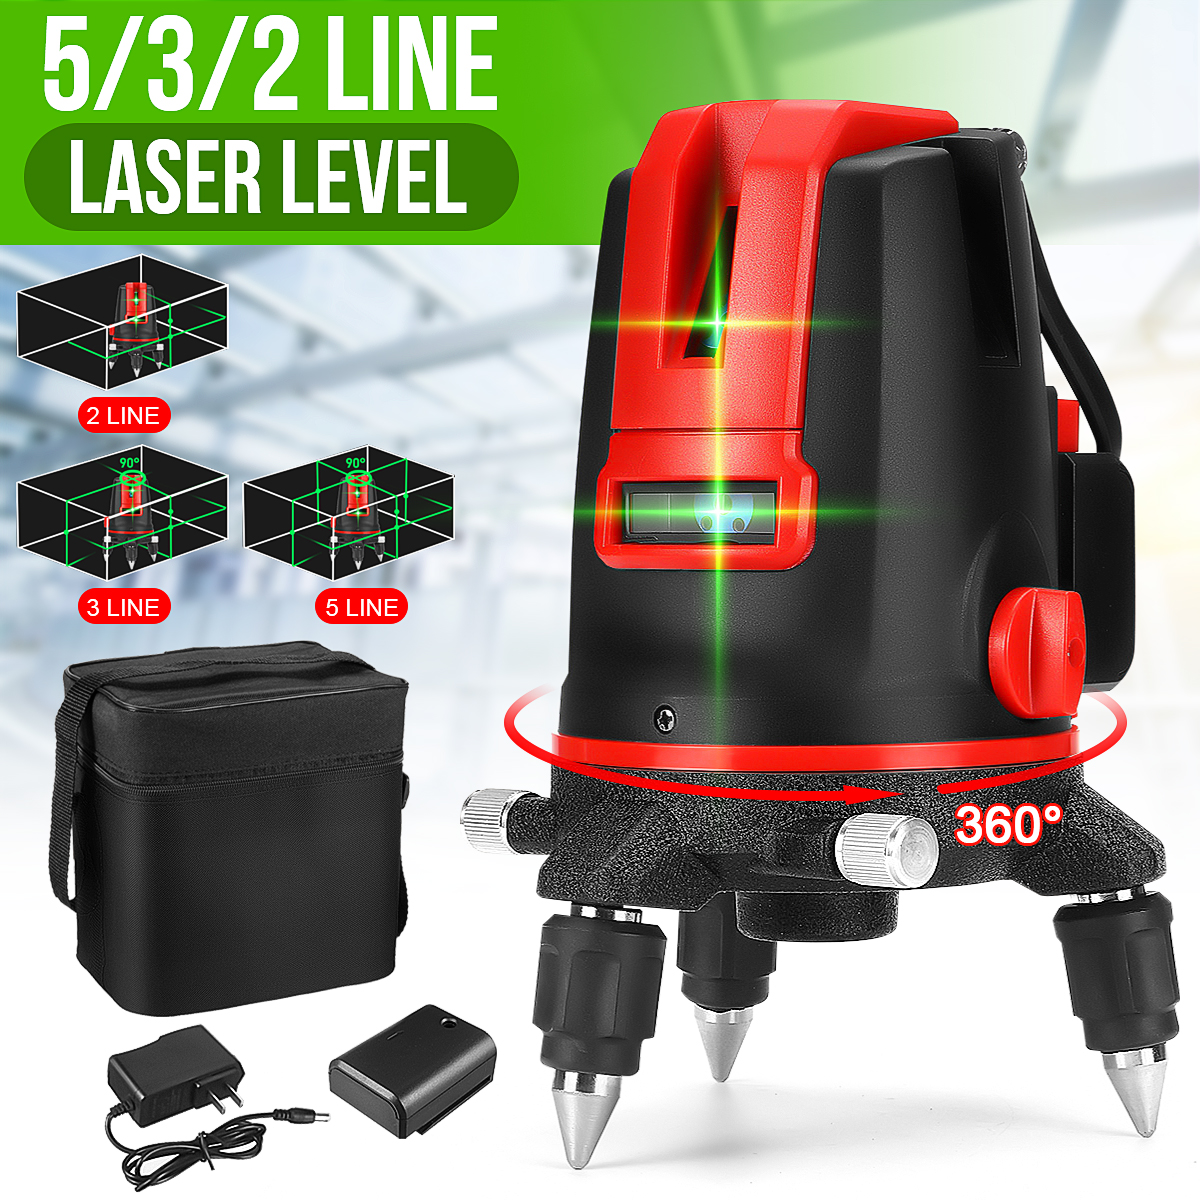 235-Lines-360deg-Rotatable-Laser-Level-Self-Leveling-Green-Light-Alternating-Direct-Horizontal-Verti-1877794-1